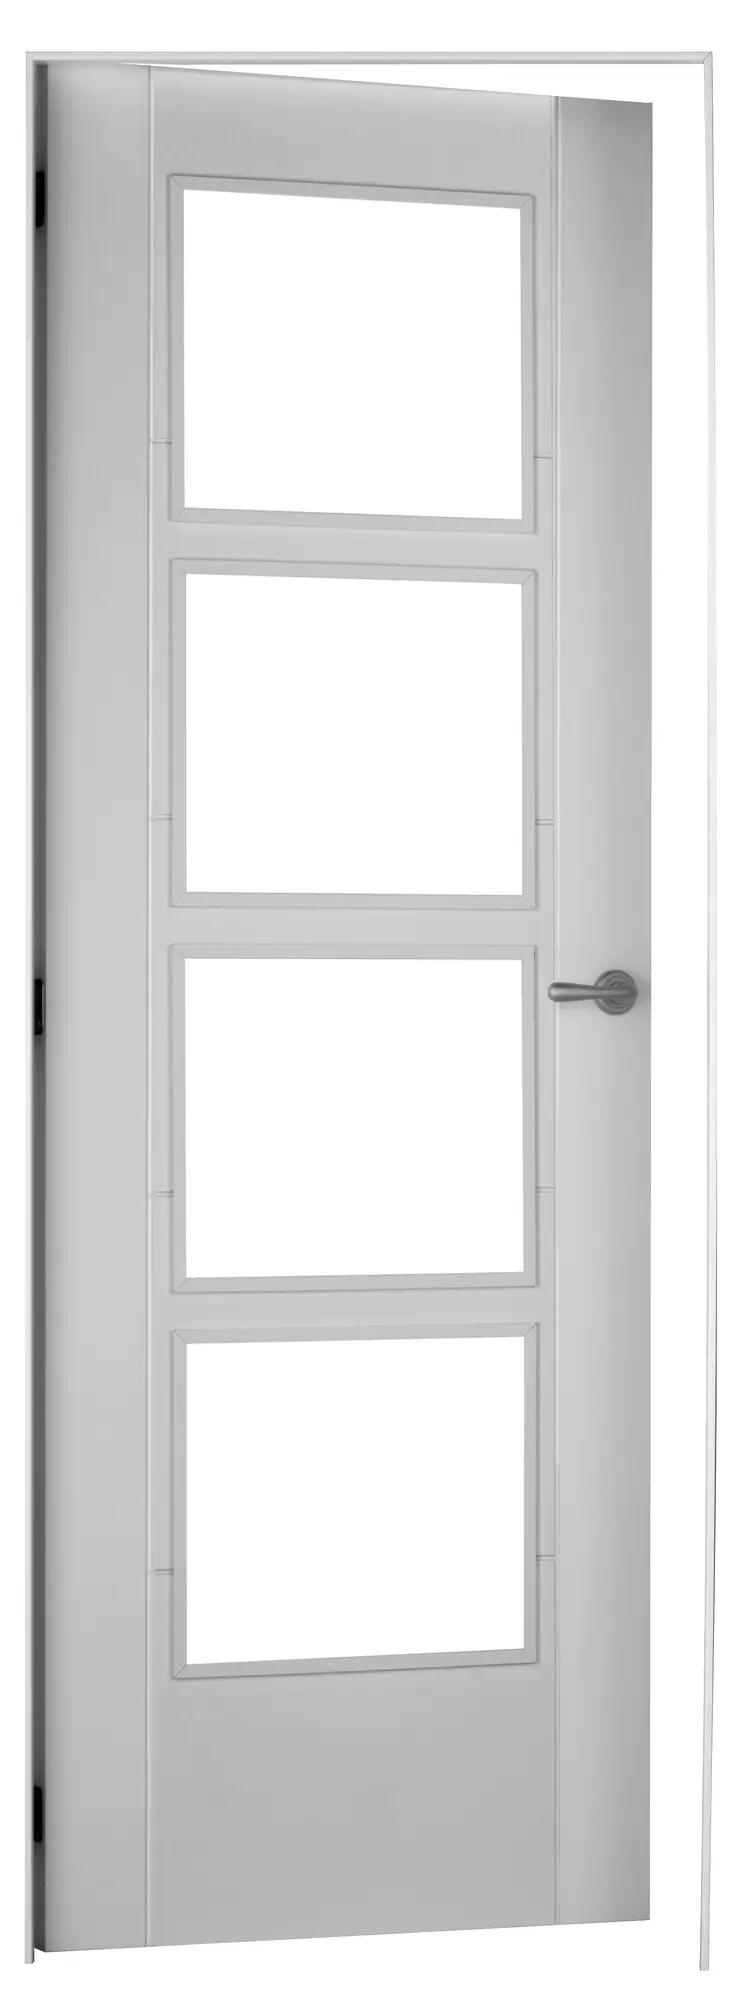 Puerta noruega blanco apertura izquierda con cristal 82.5cm